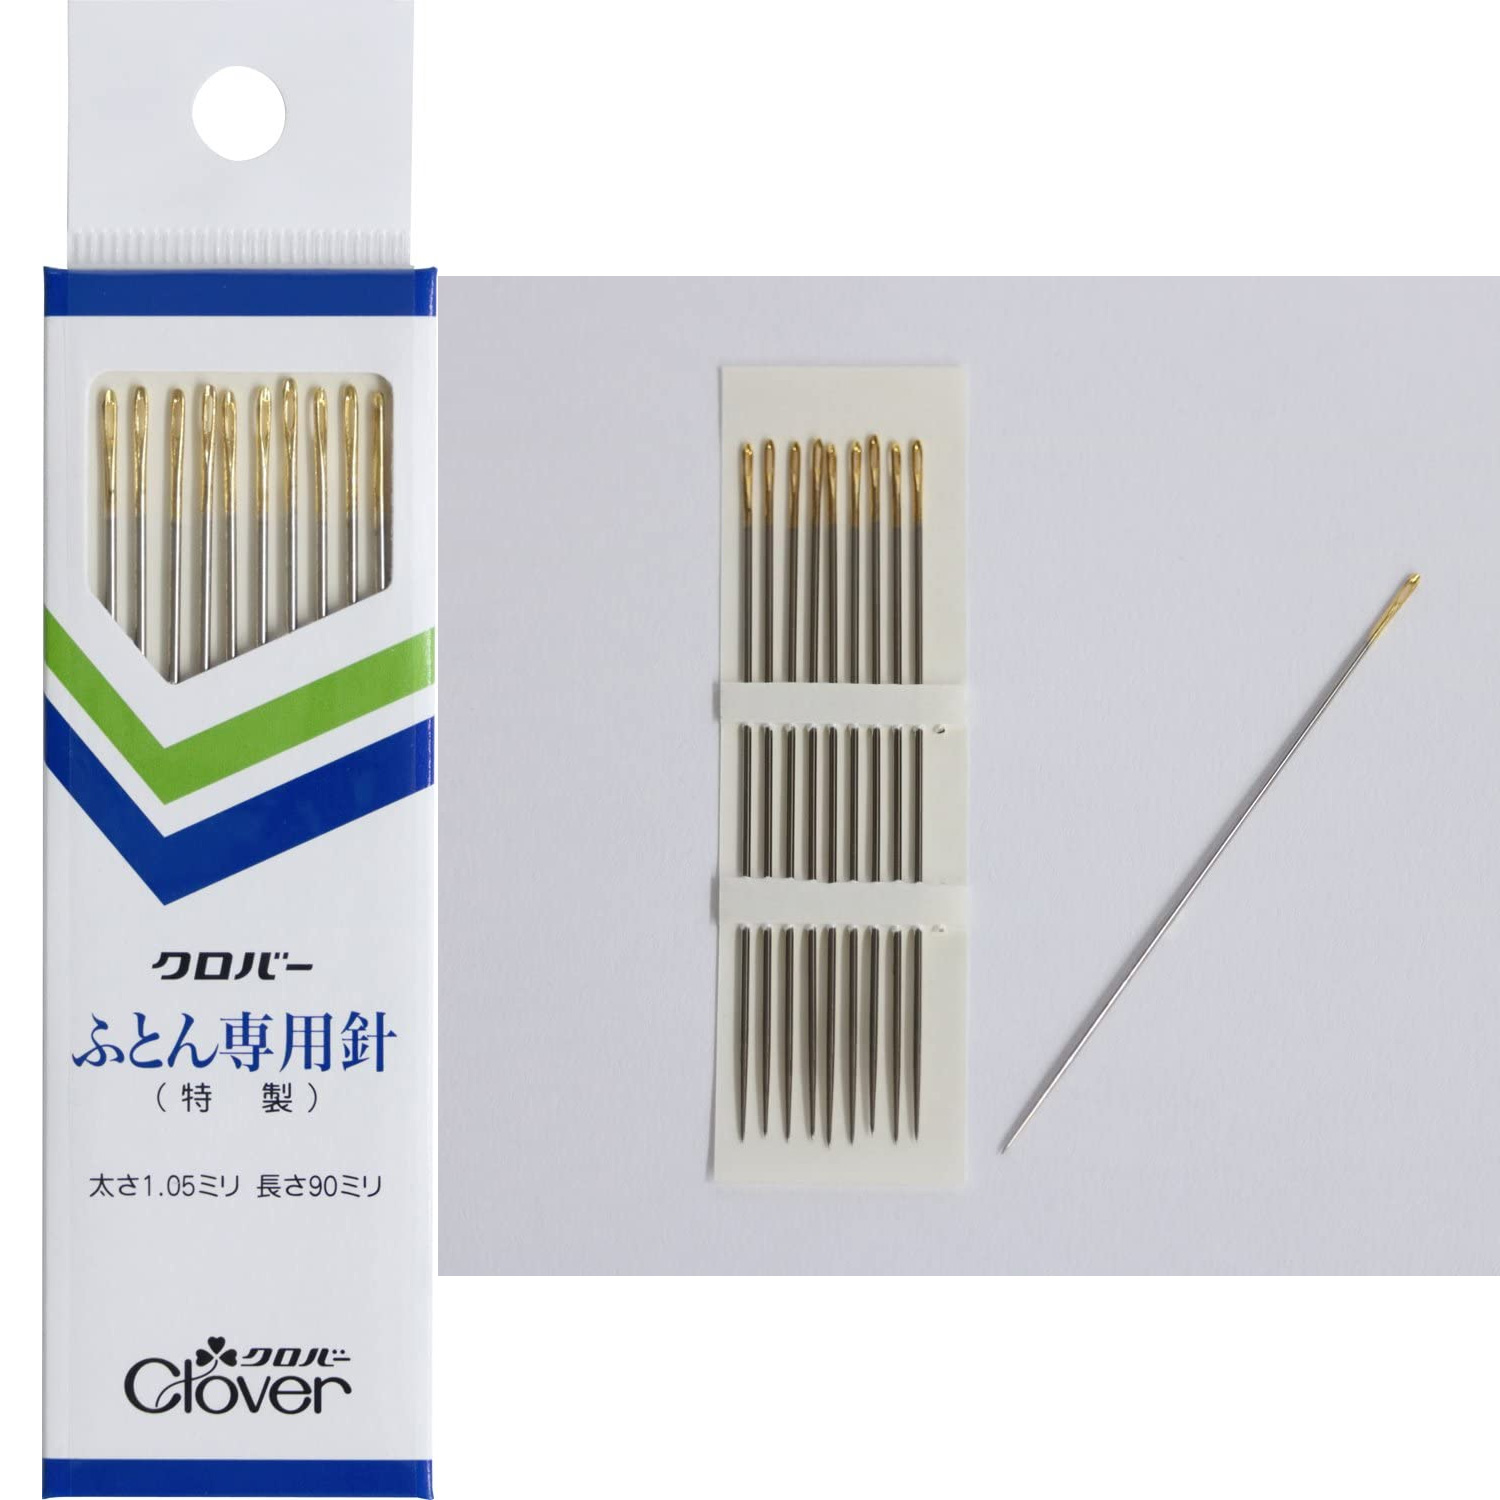 Needle / NIPPON CHUKO ONLINE